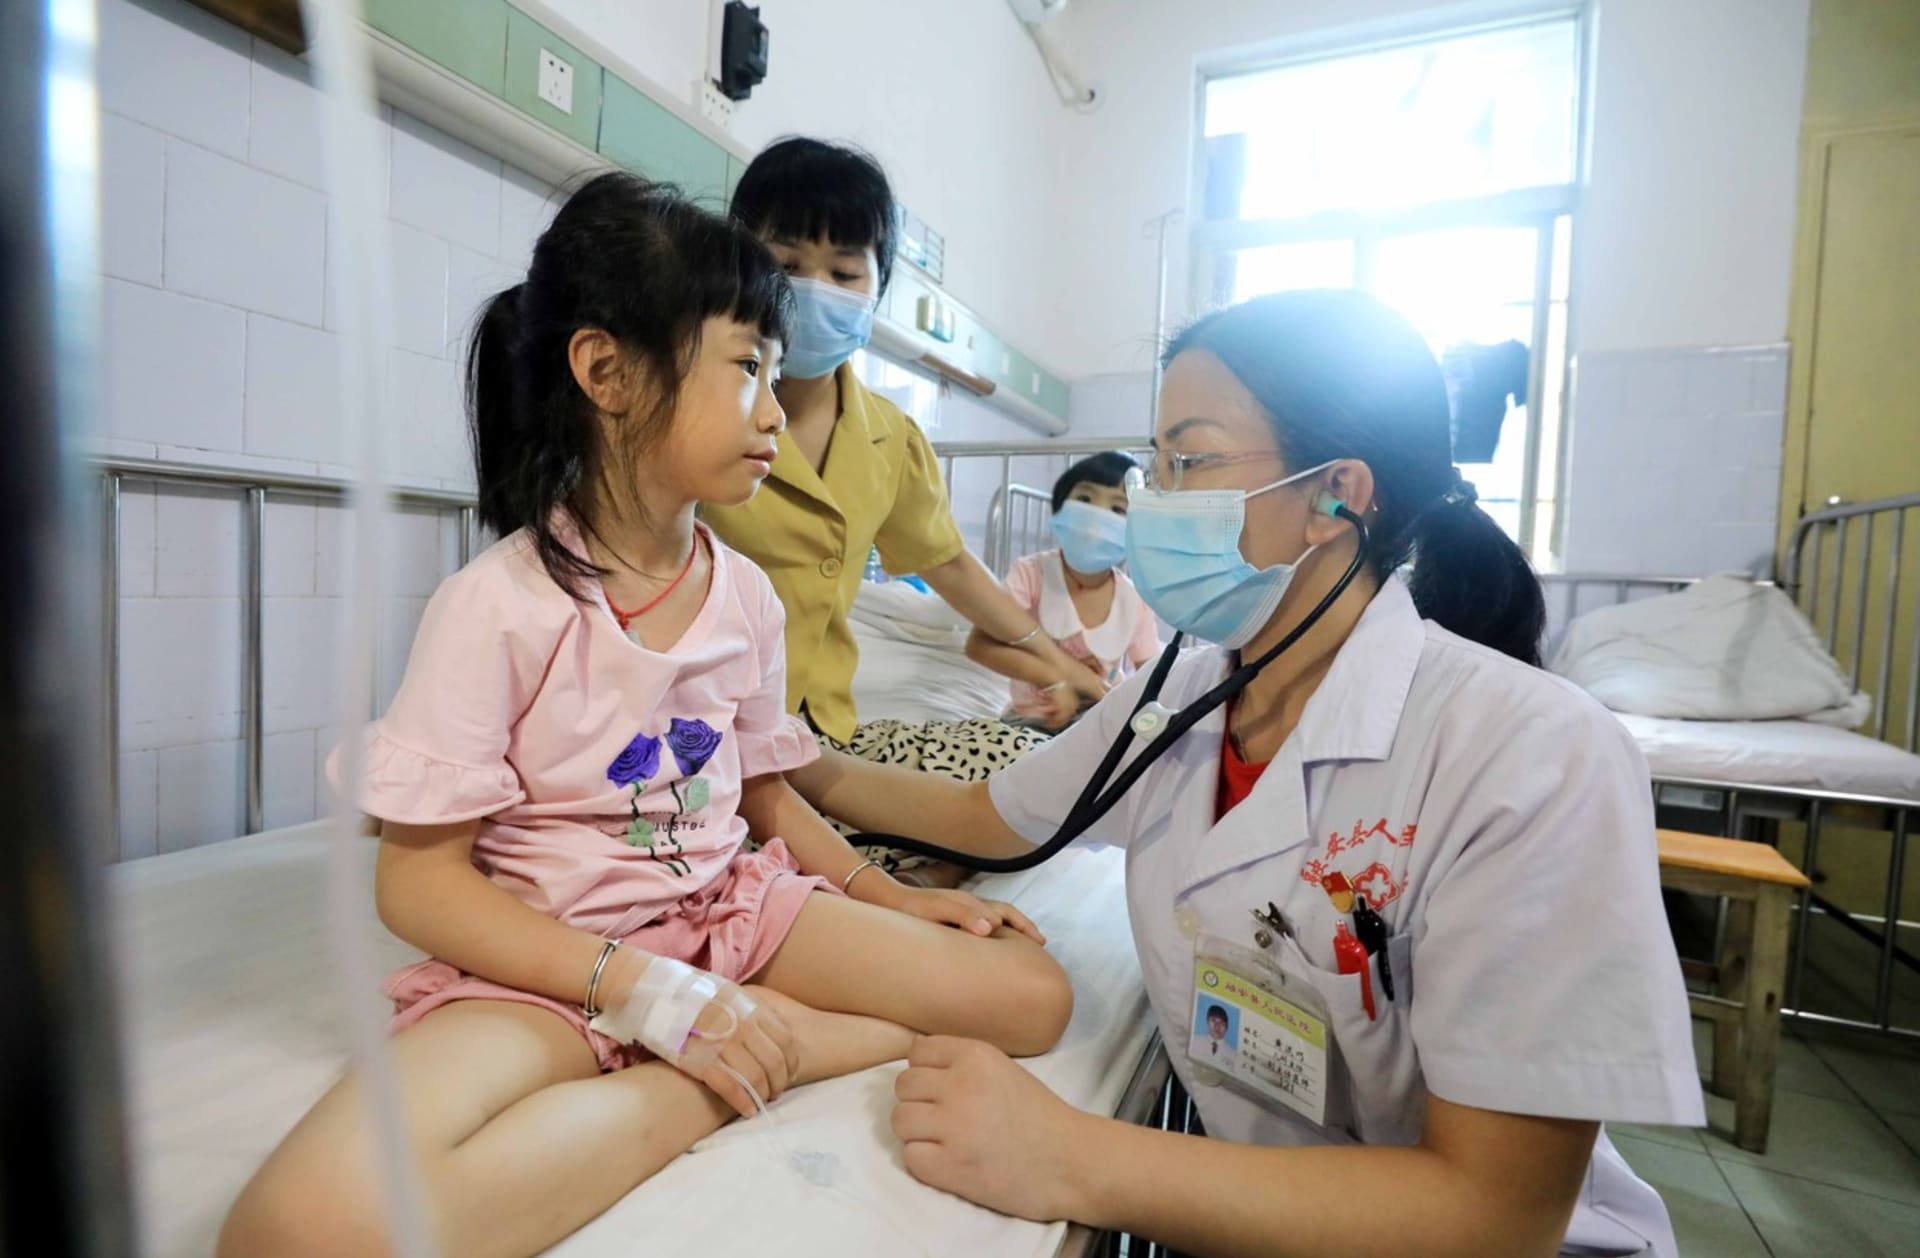 Čínou se šíří záhadné respirační onemocnění, postihuje hlavně děti. (Ilustrační foto)